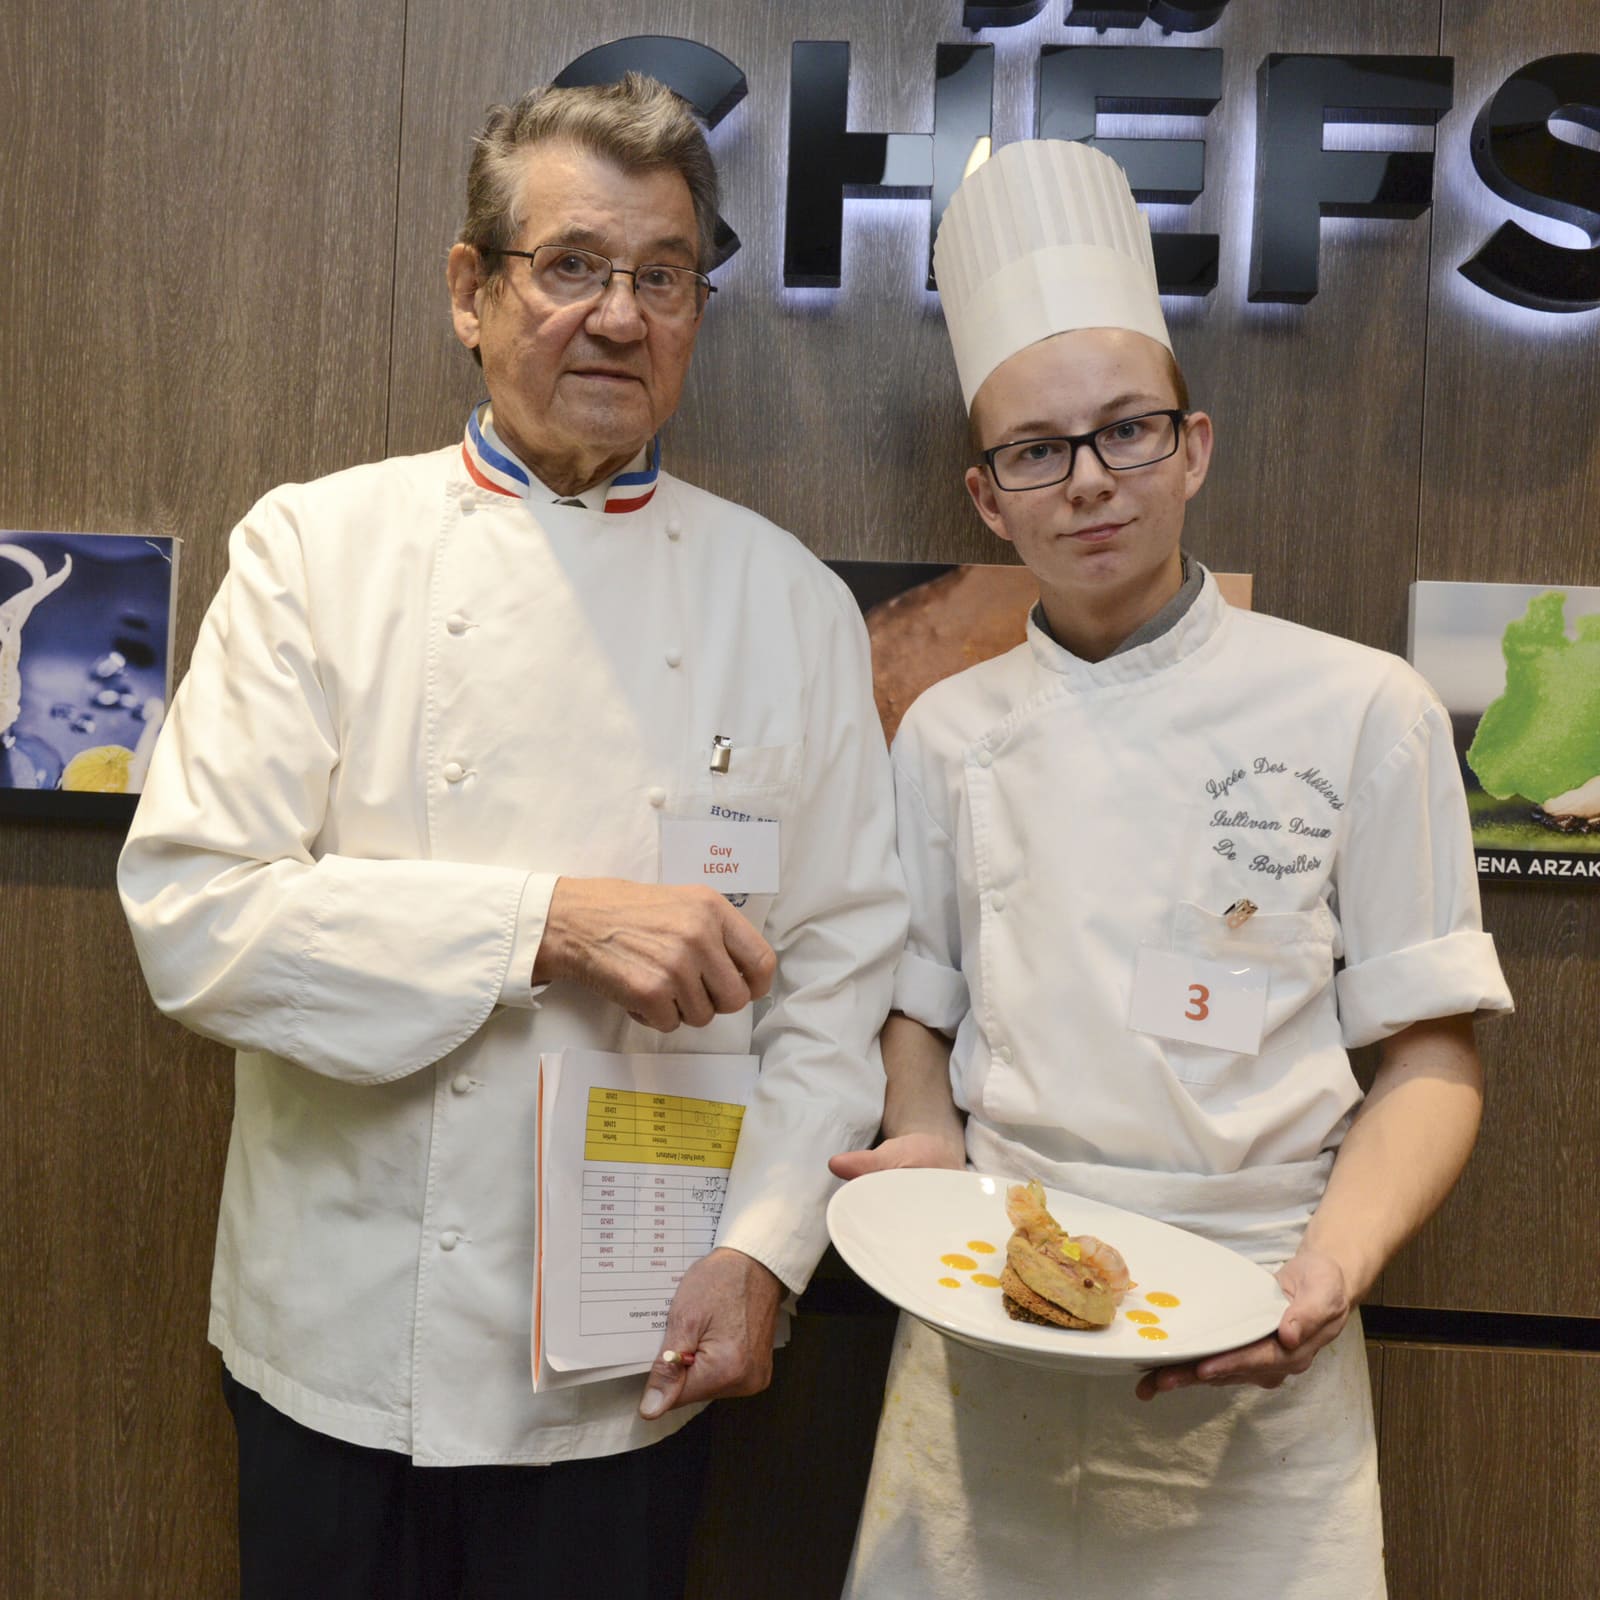 Sullivan Doux accompagné du célèbre Chef Meilleur Ouvrier de France Guy Legay, ex-Chef du Ritz, Paris.